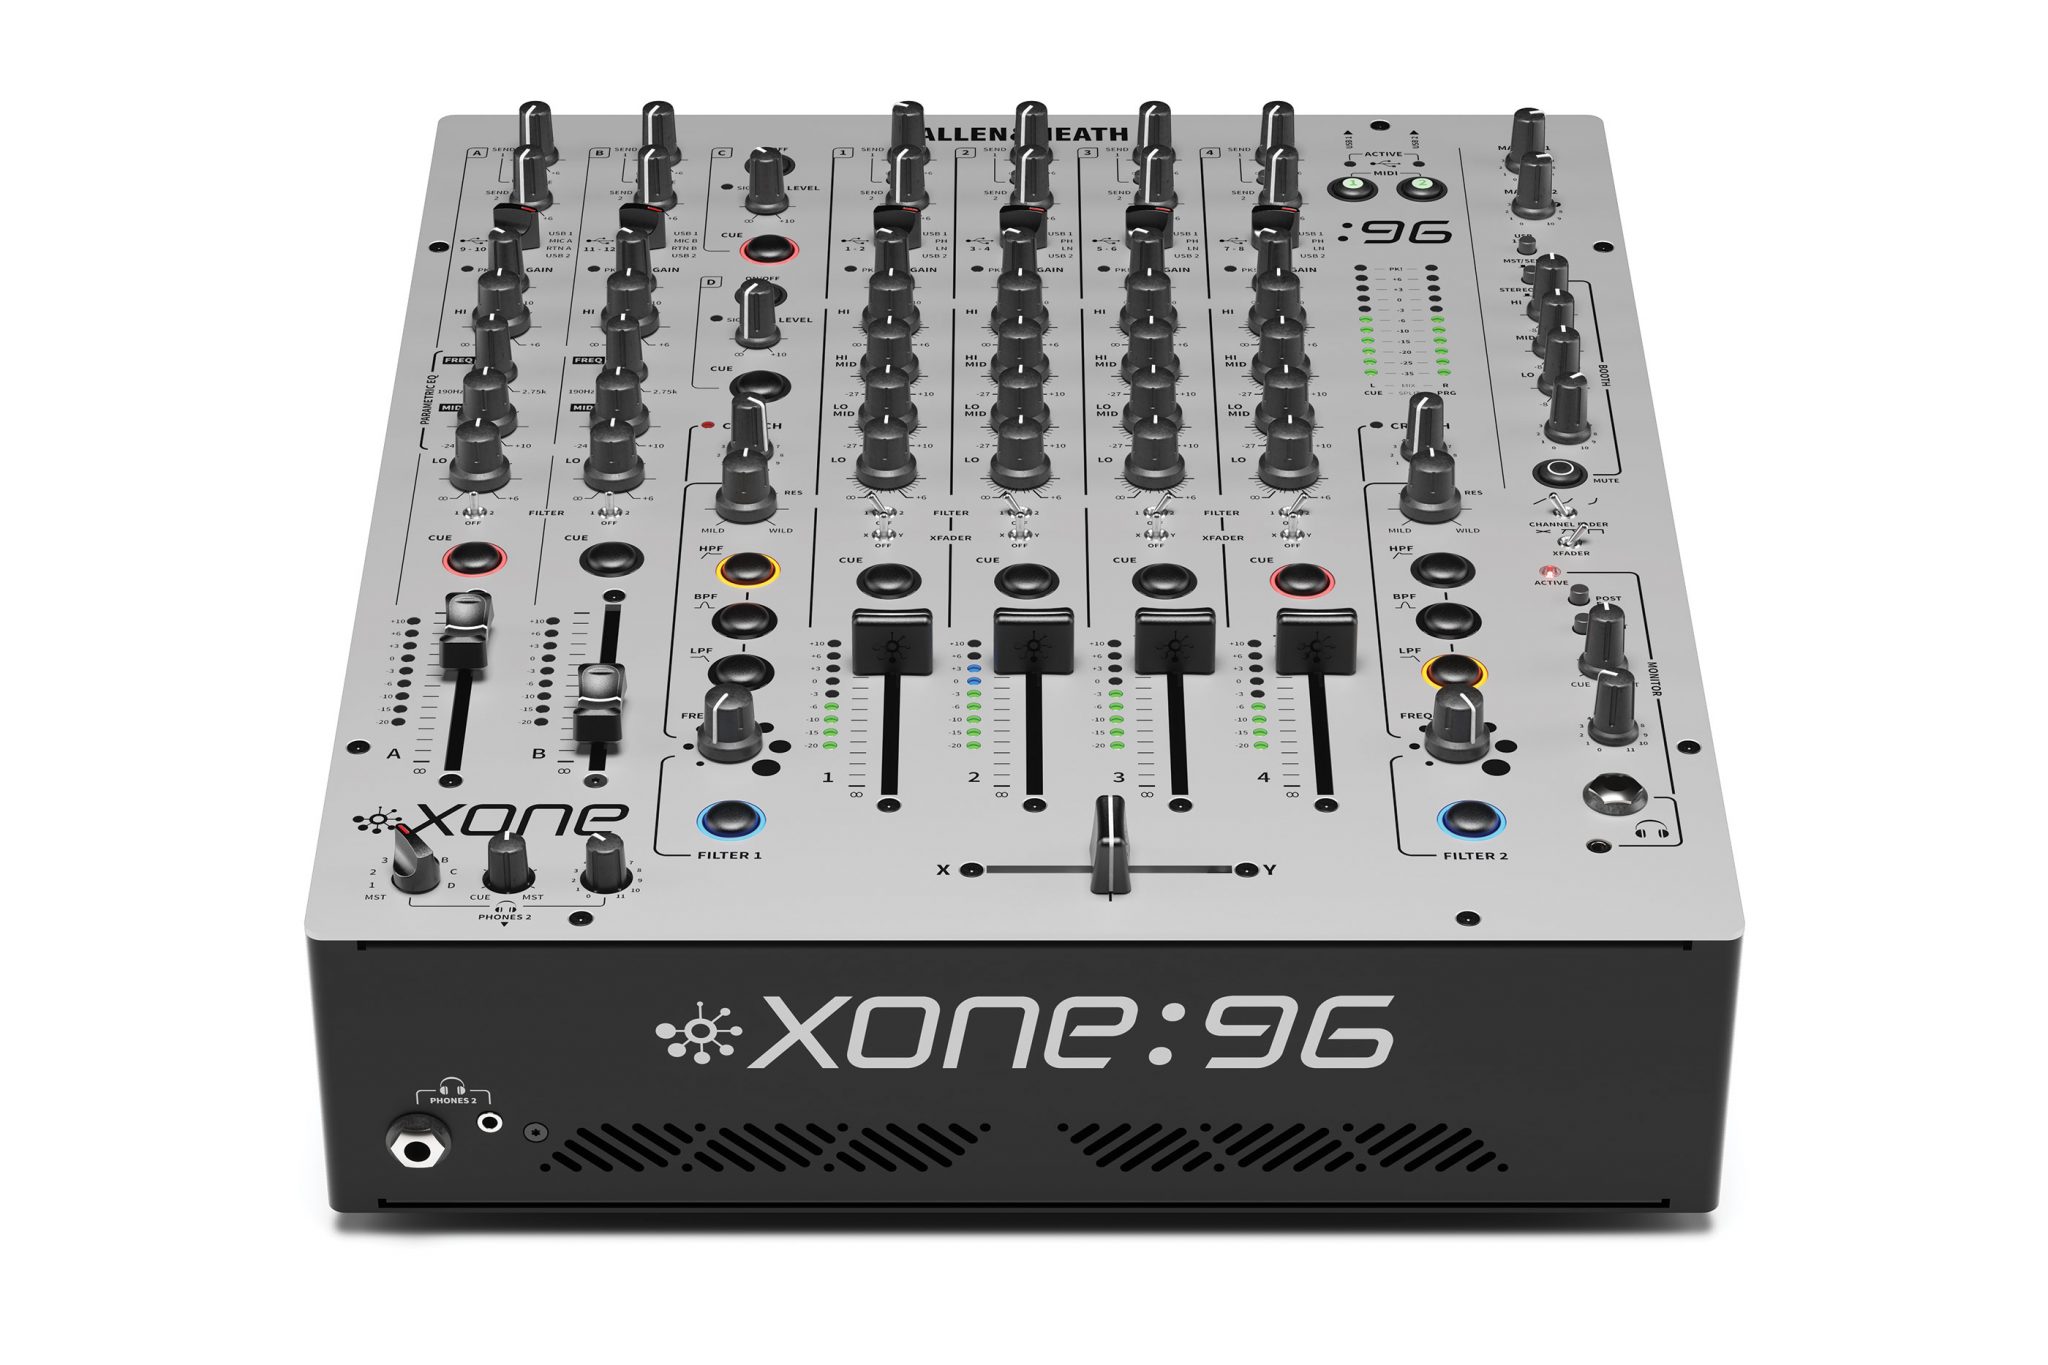 xone-96-allen-heath-mixer-dj-world-music